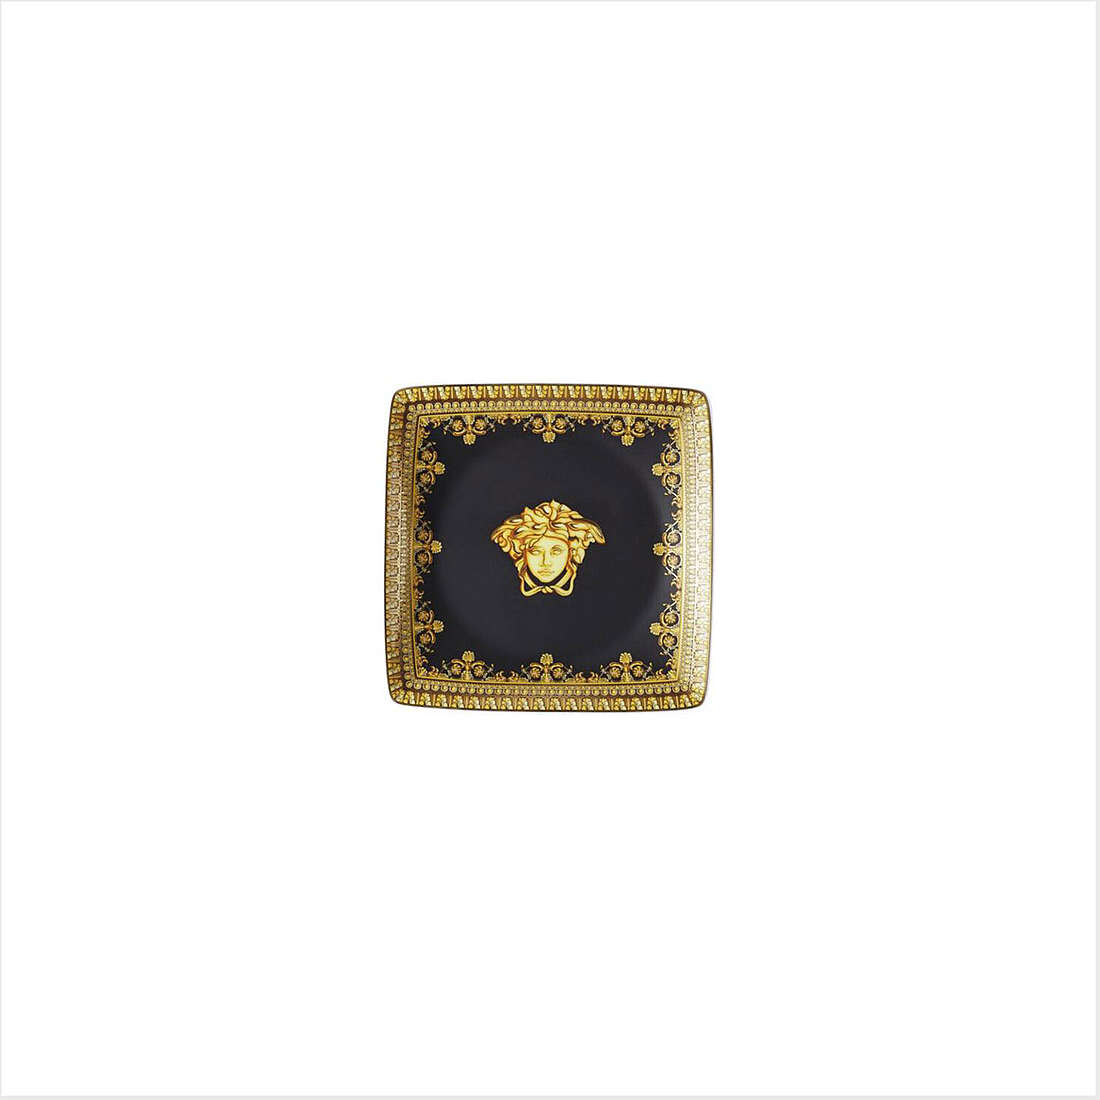 Ciotola Versace I Love Baroque colore Nero, Oro 11940-403653-15253